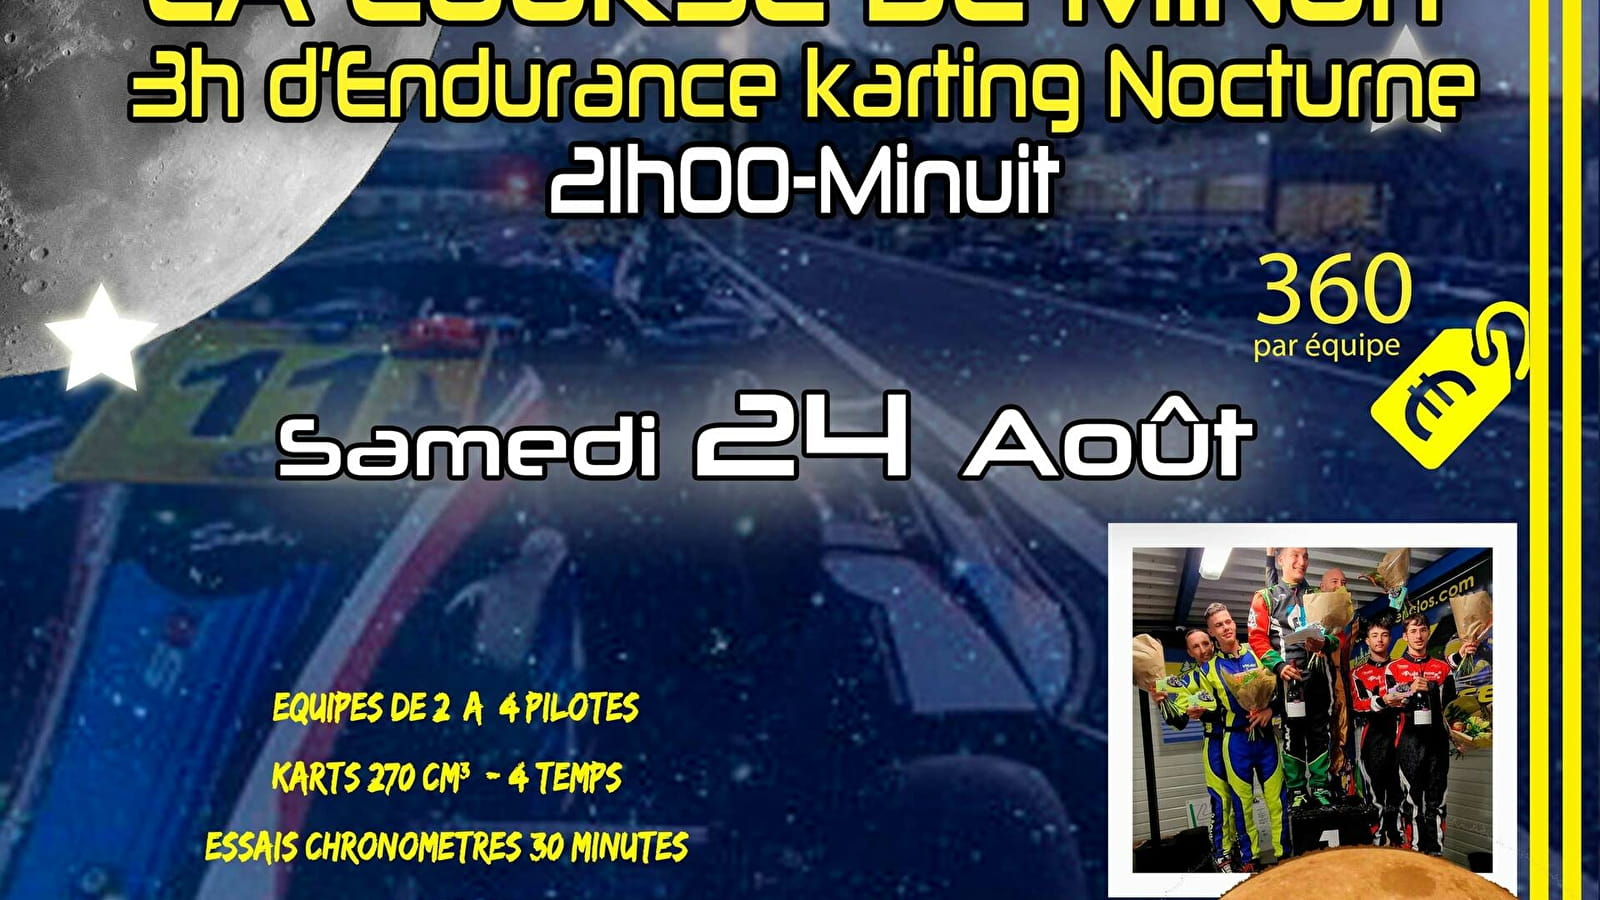 Karting - La nocturne - Course de Minuit